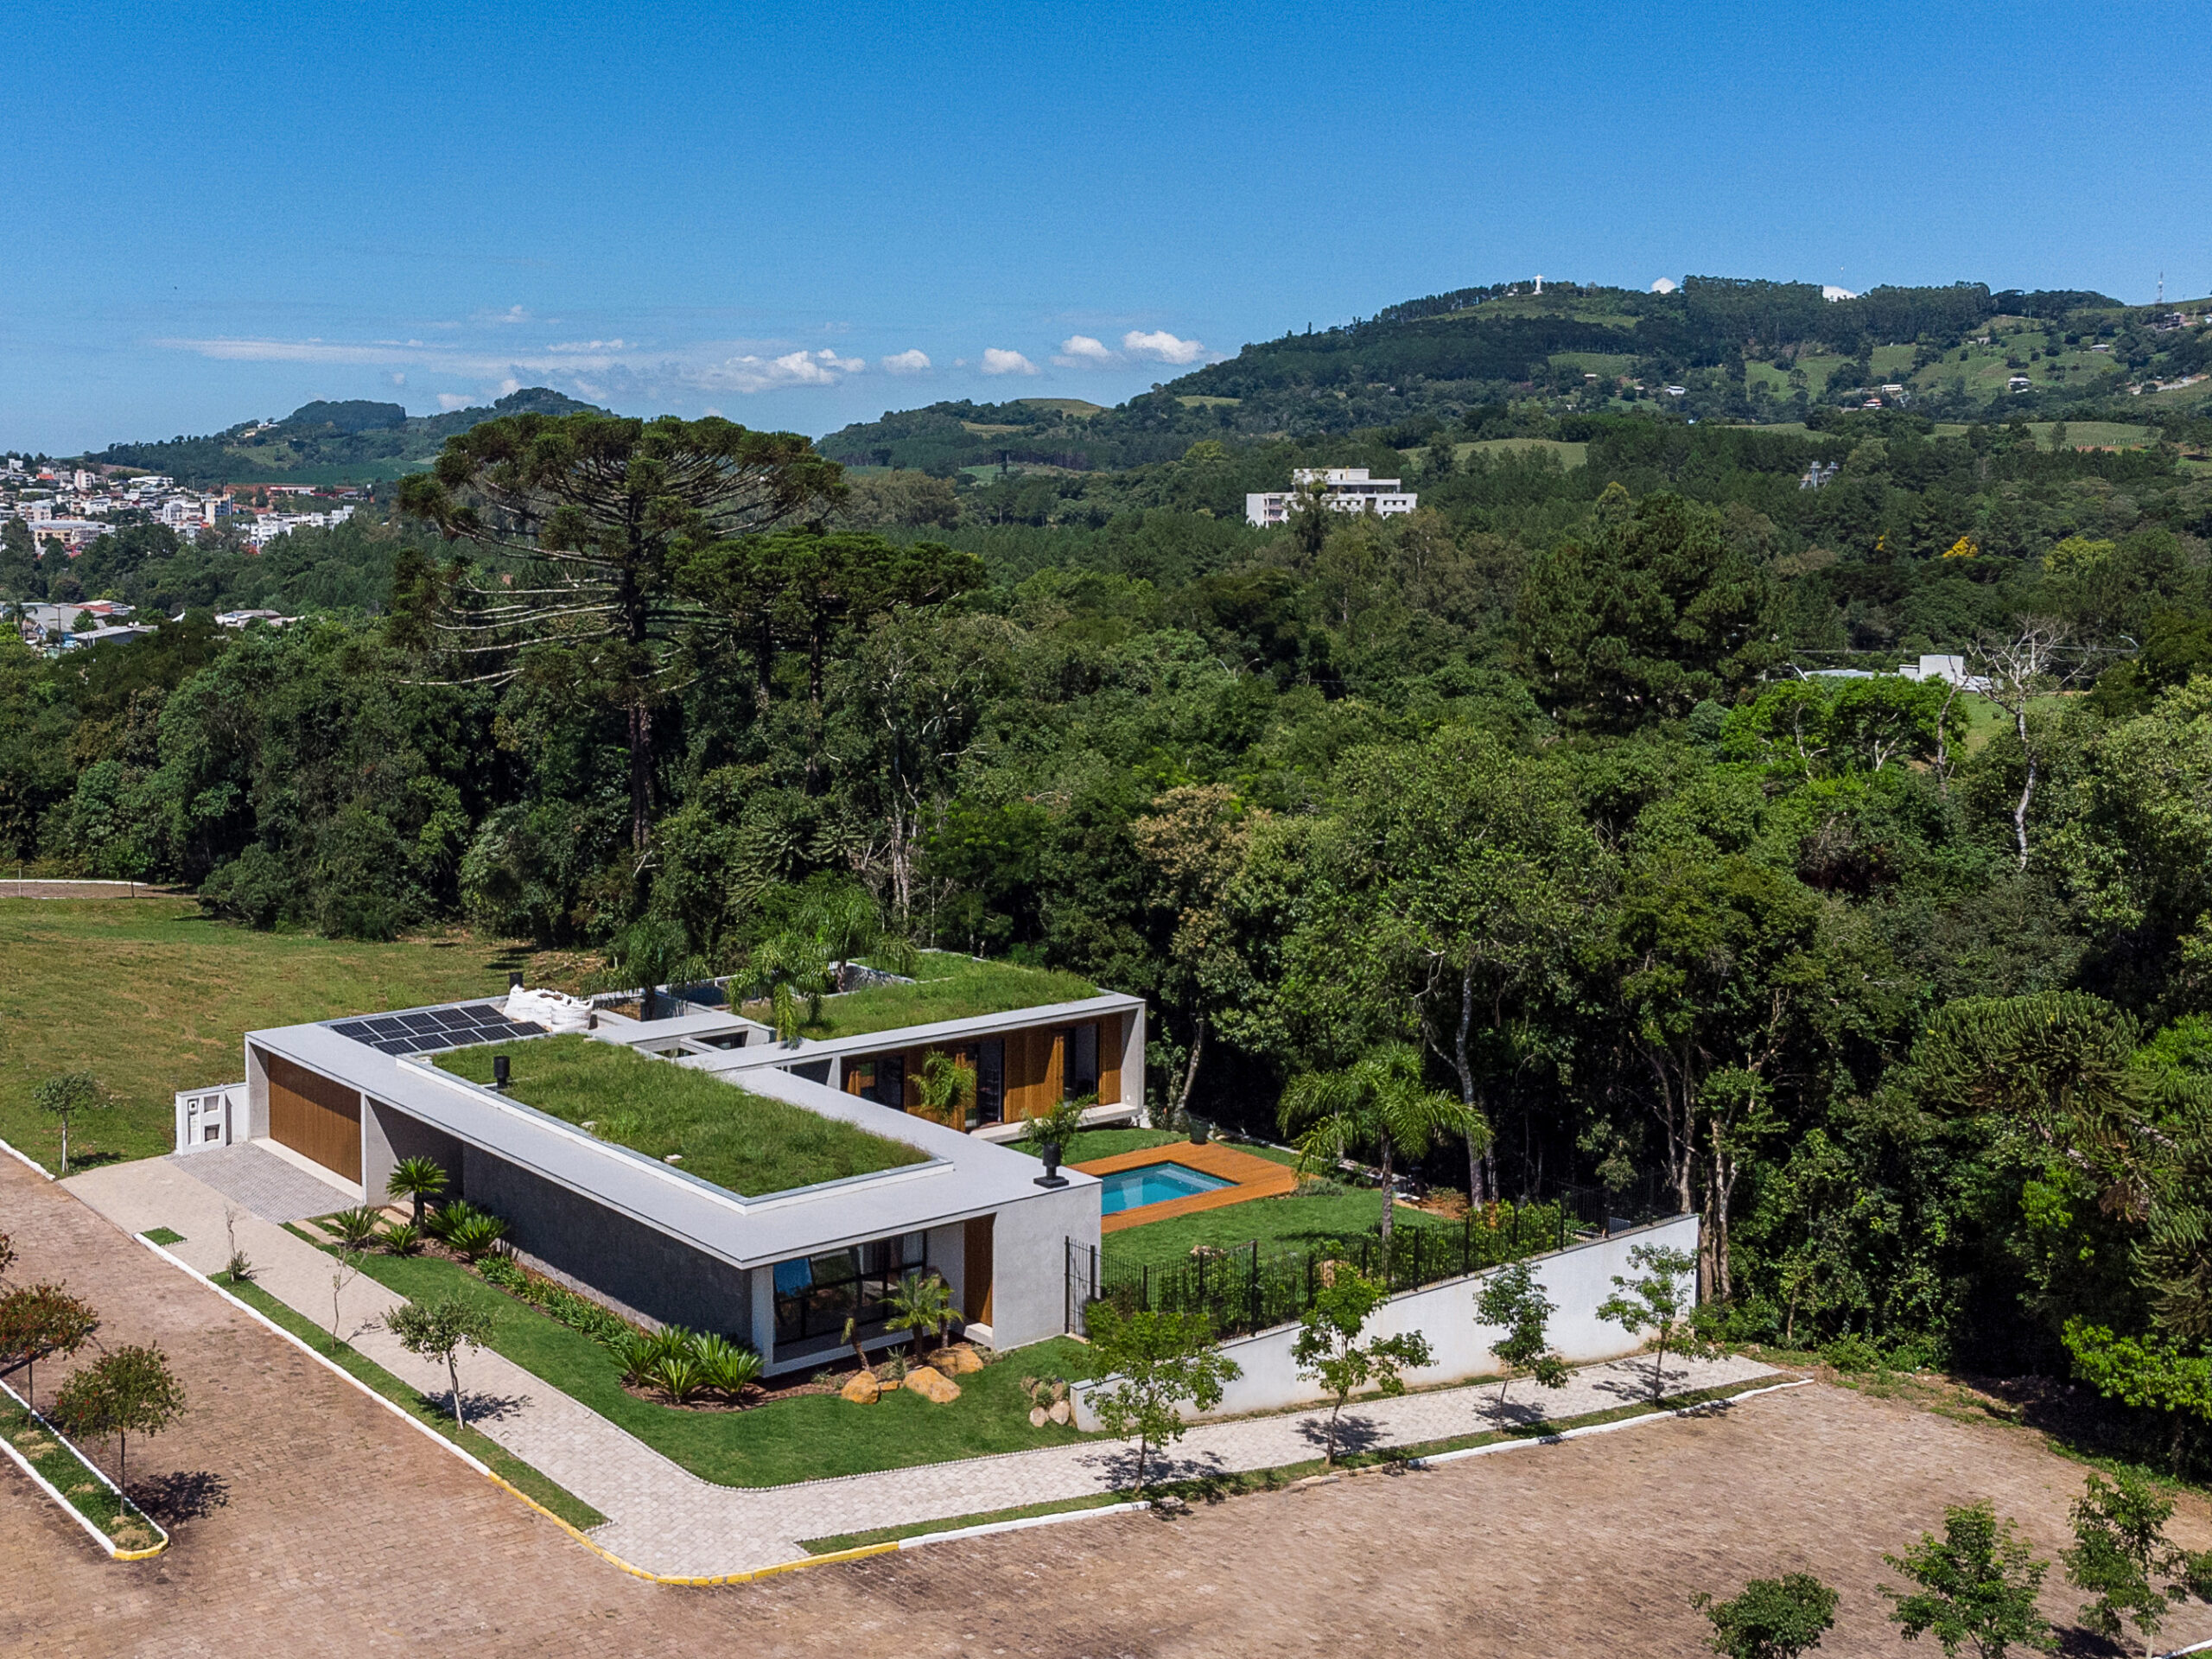 Residência Araucária, Guaporé, Brazil, by VOO® Arquitetura e Engenharia